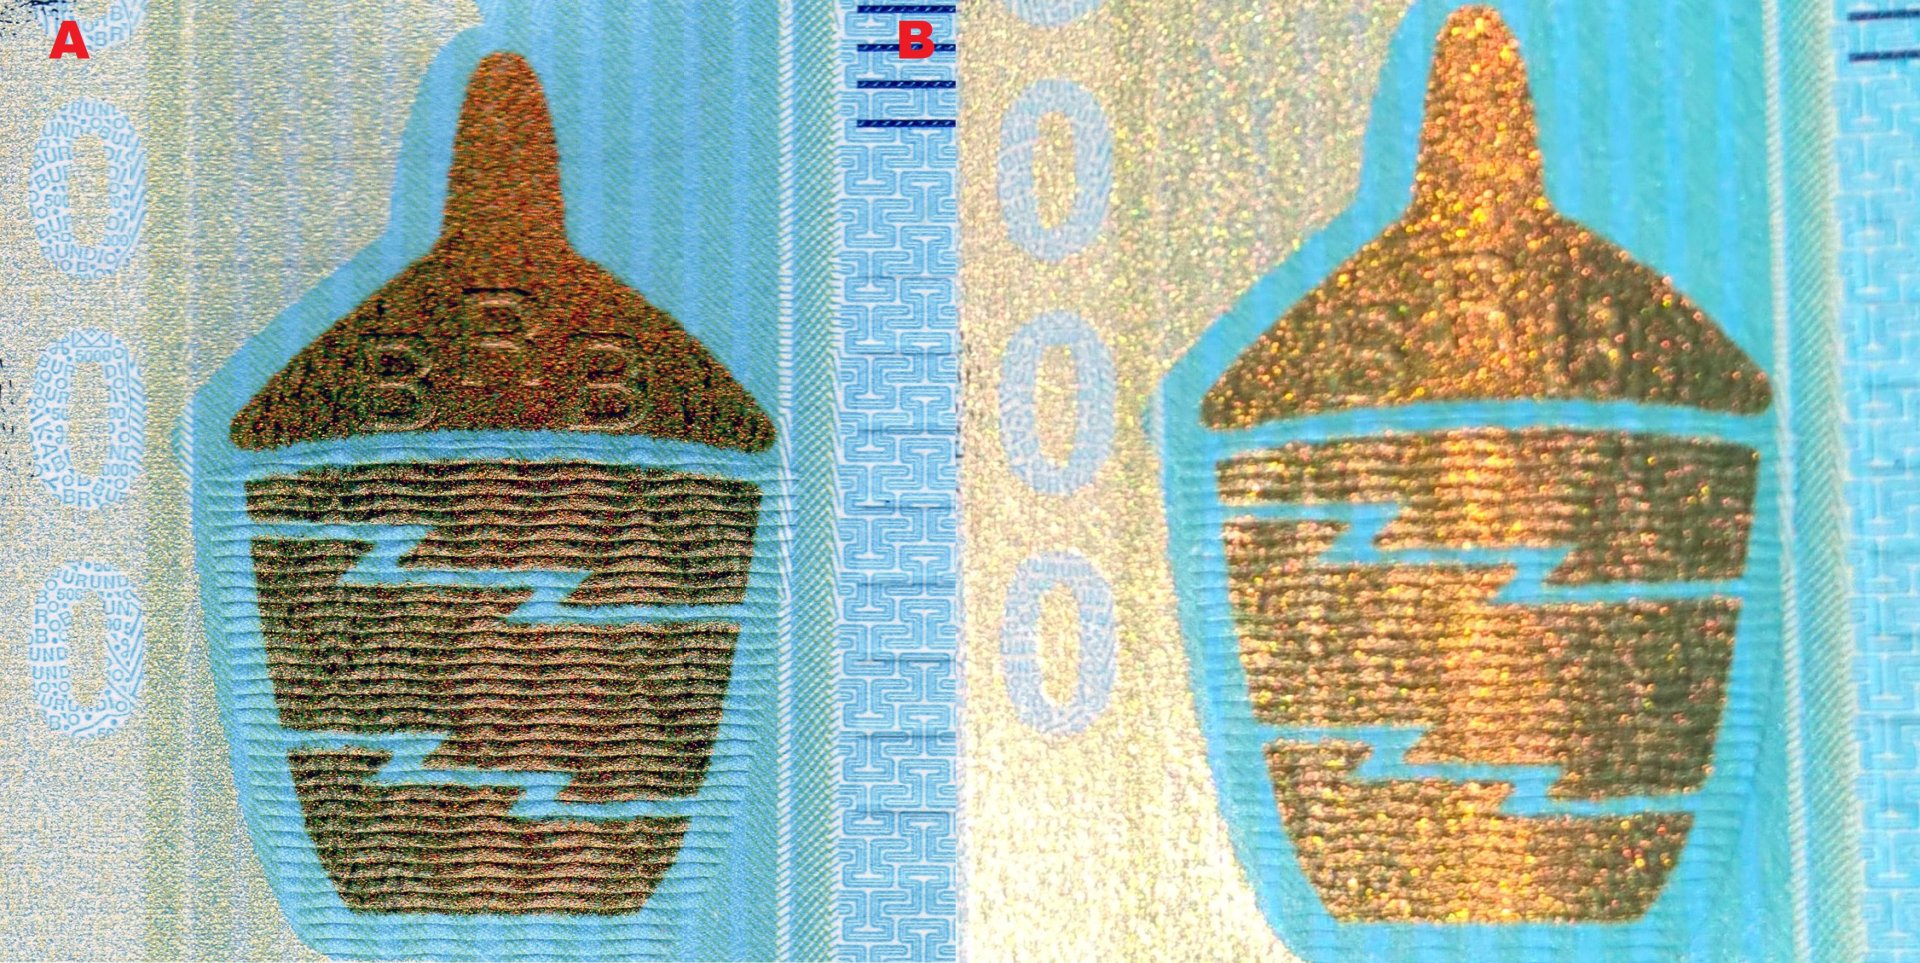 5 A) Proutěný košík "agaseke" s profilometricky pozitivním akronymem "BRB" B) Při otáčení bankovkou se zobrazuje vertikální pohyblivý iridescentní pruh měděného zabarvení.